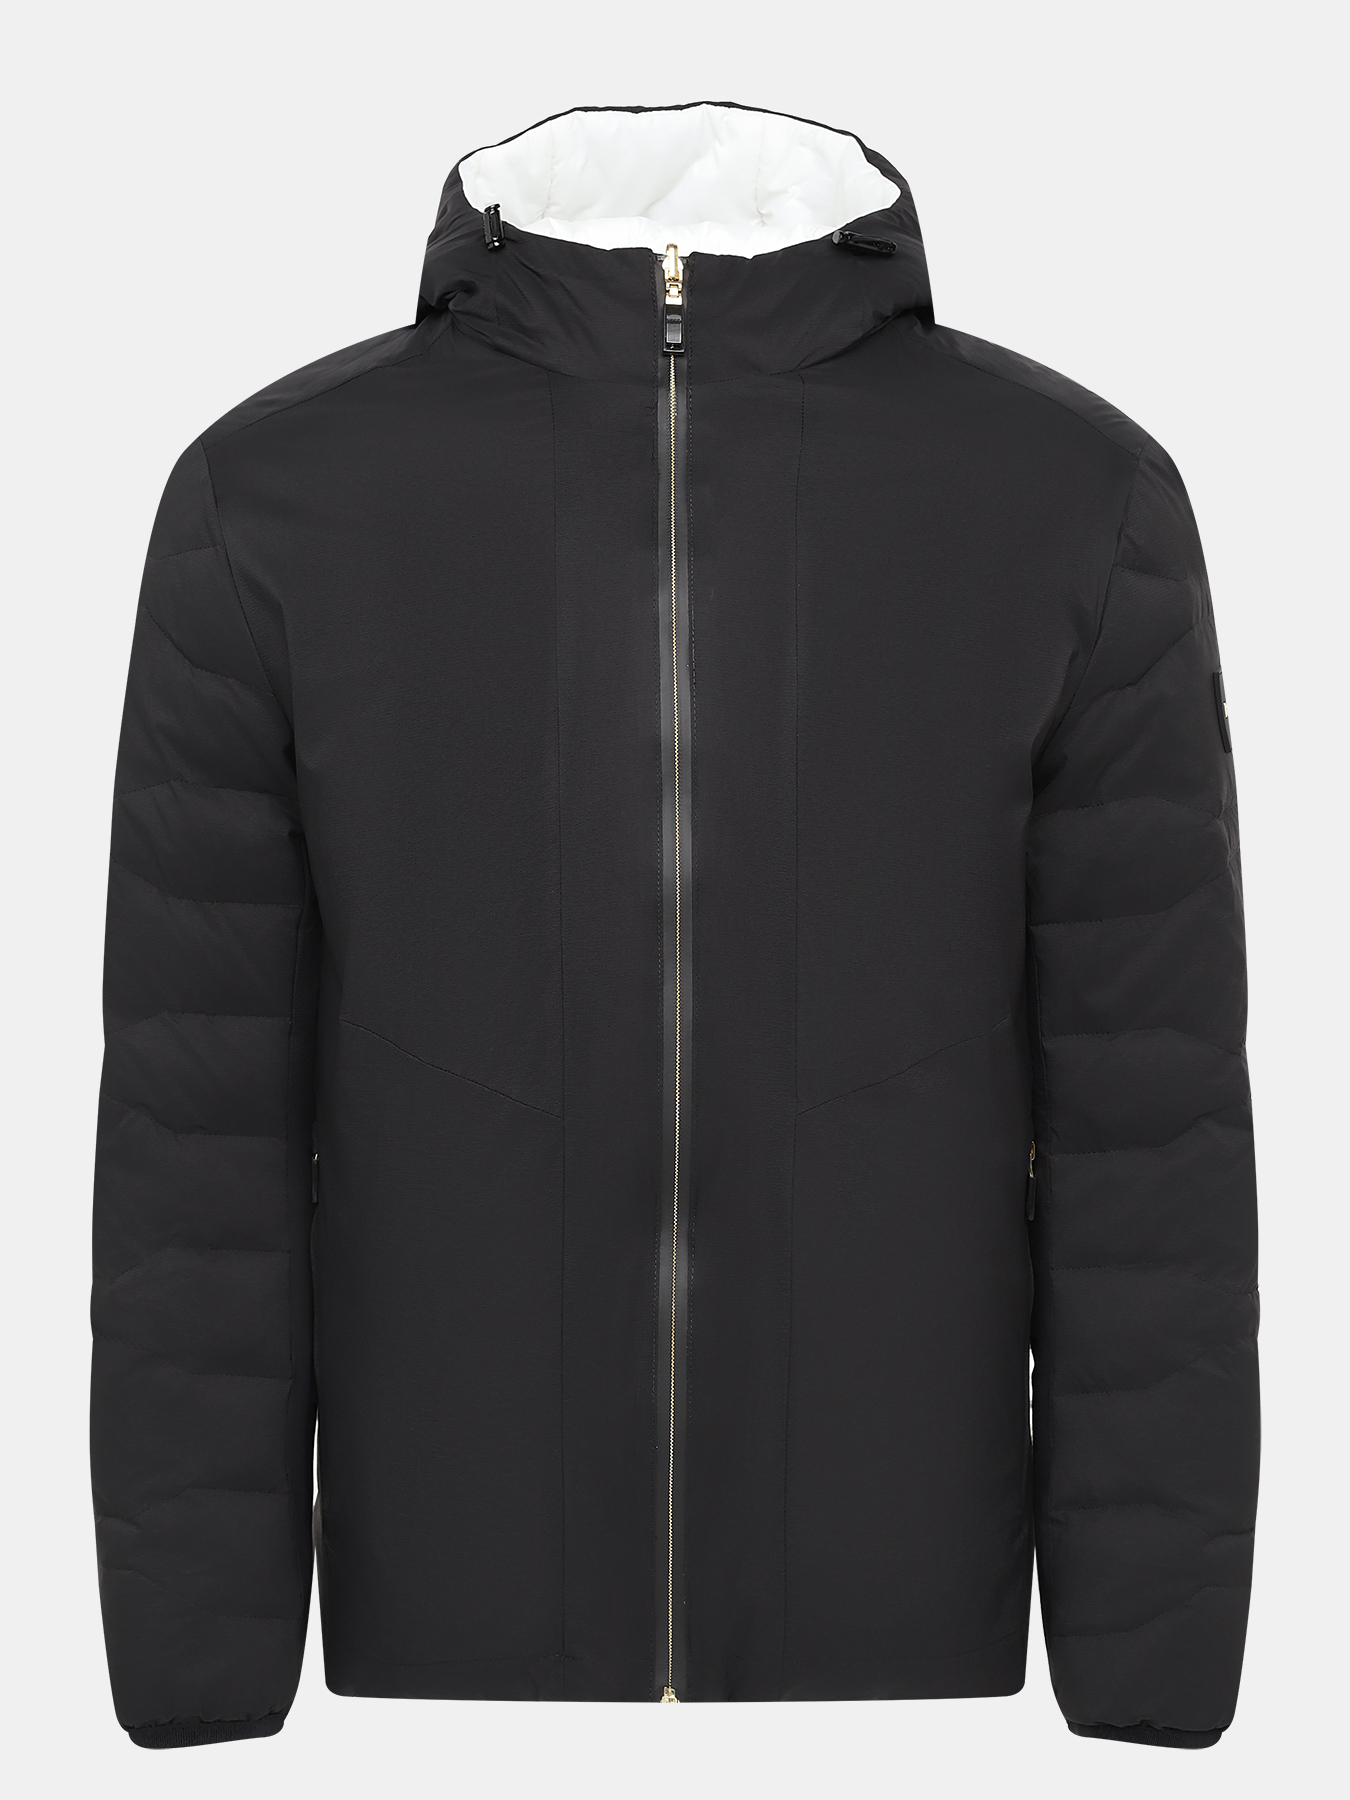 Двусторонняя куртка J Leonis BOSS 432908-043, цвет черно-белый, размер 48-50